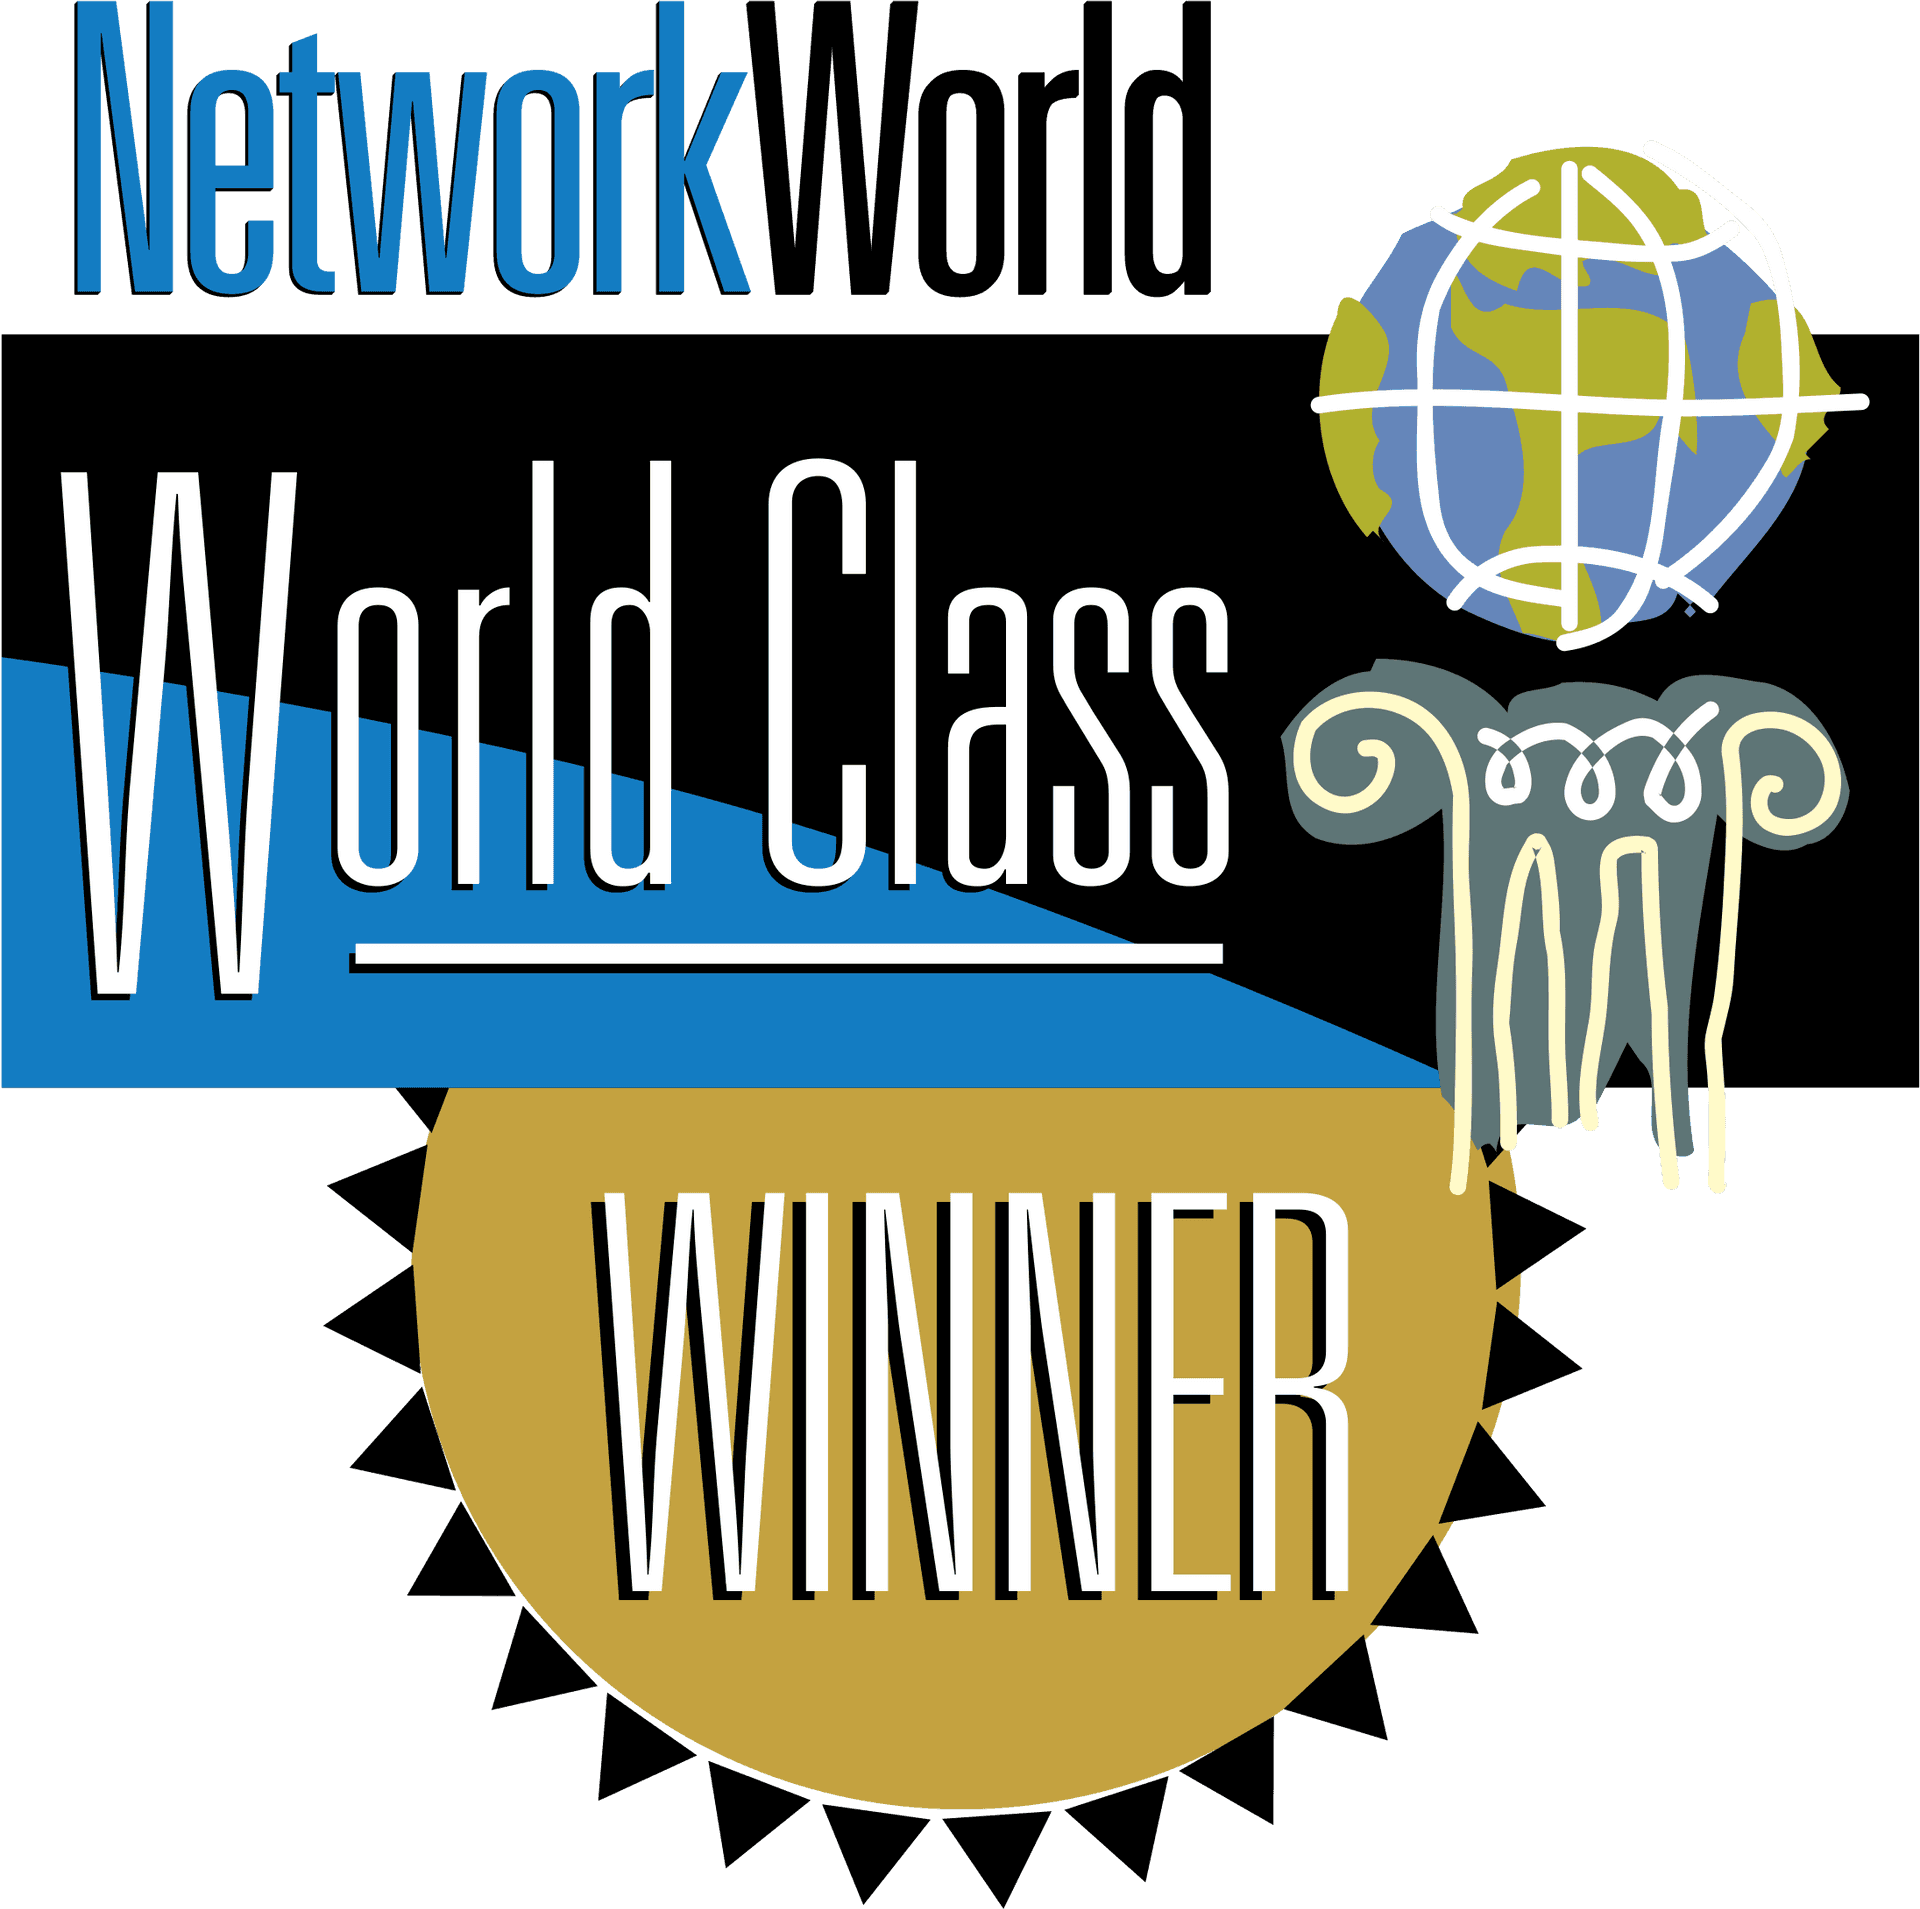 Network World World Class Winner Badge PNG